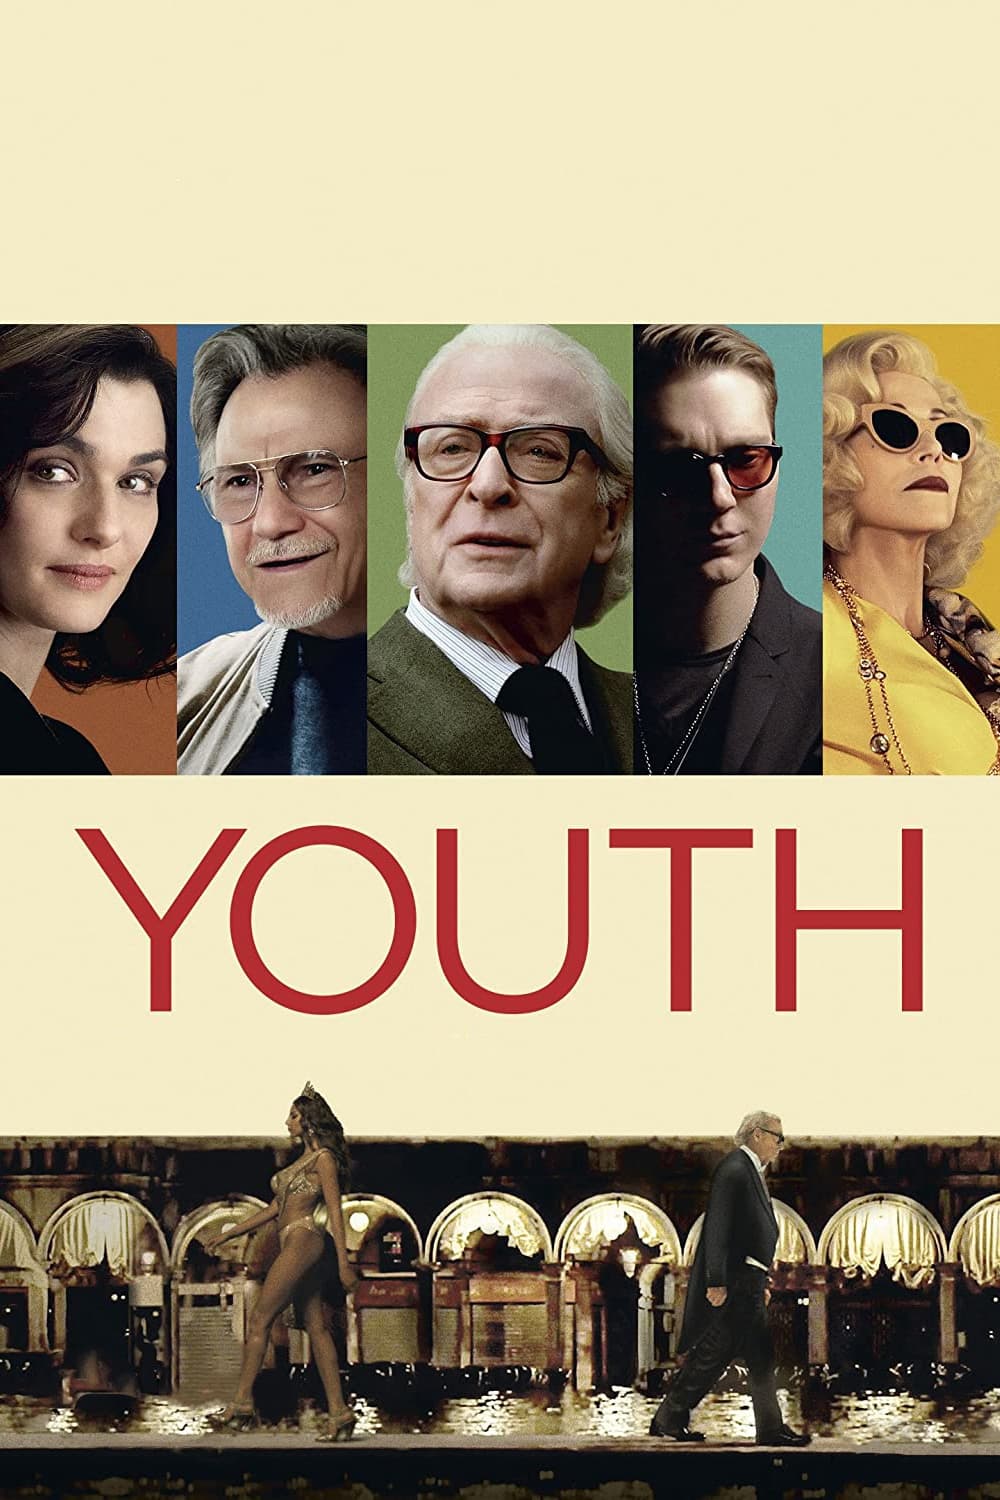 La juventud (2015)